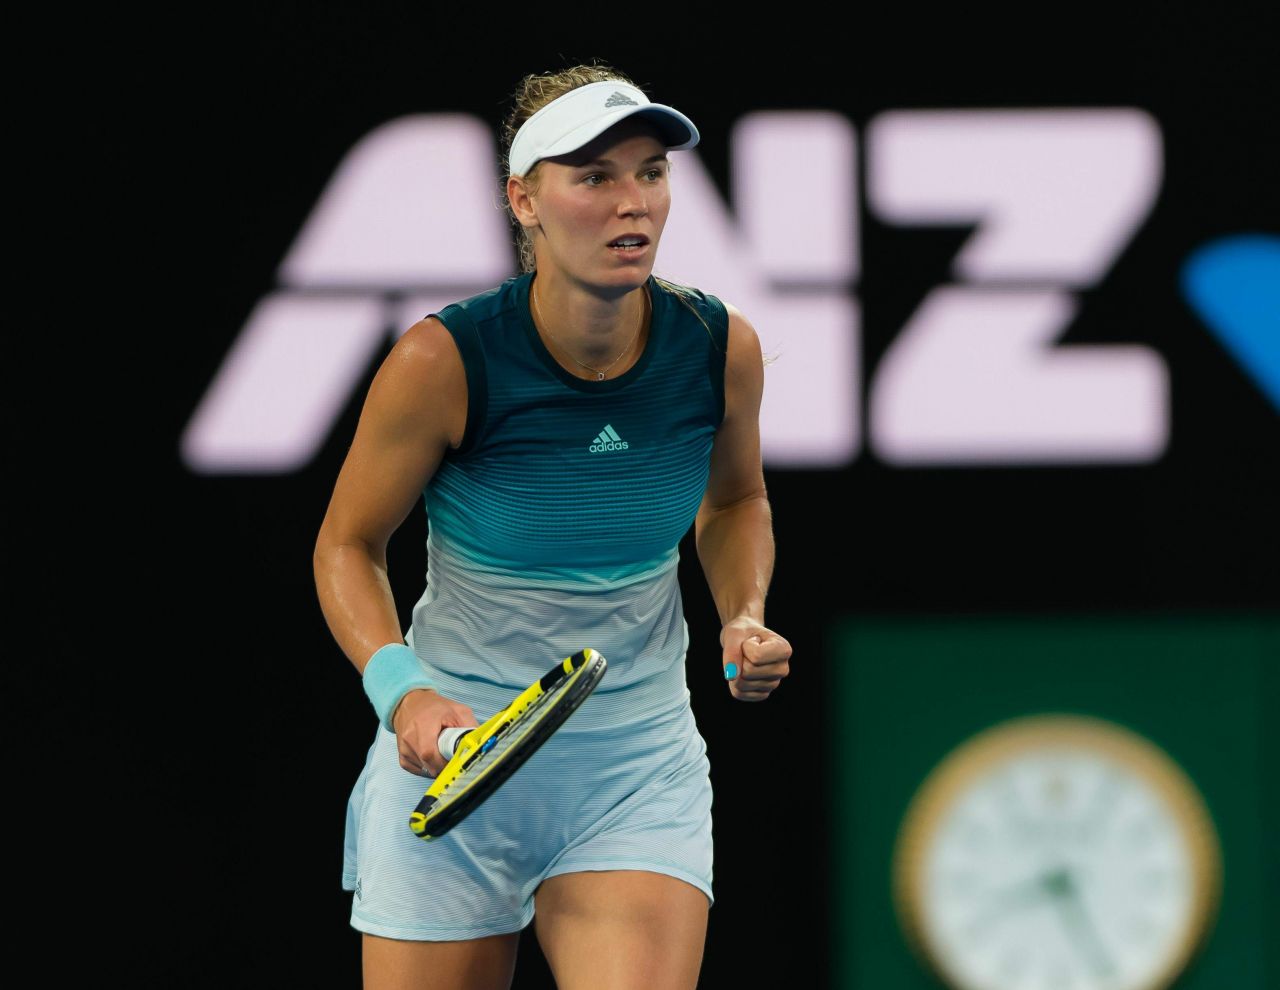 Caroline Wozniacki – Australian Open 01/14/20191280 x 990